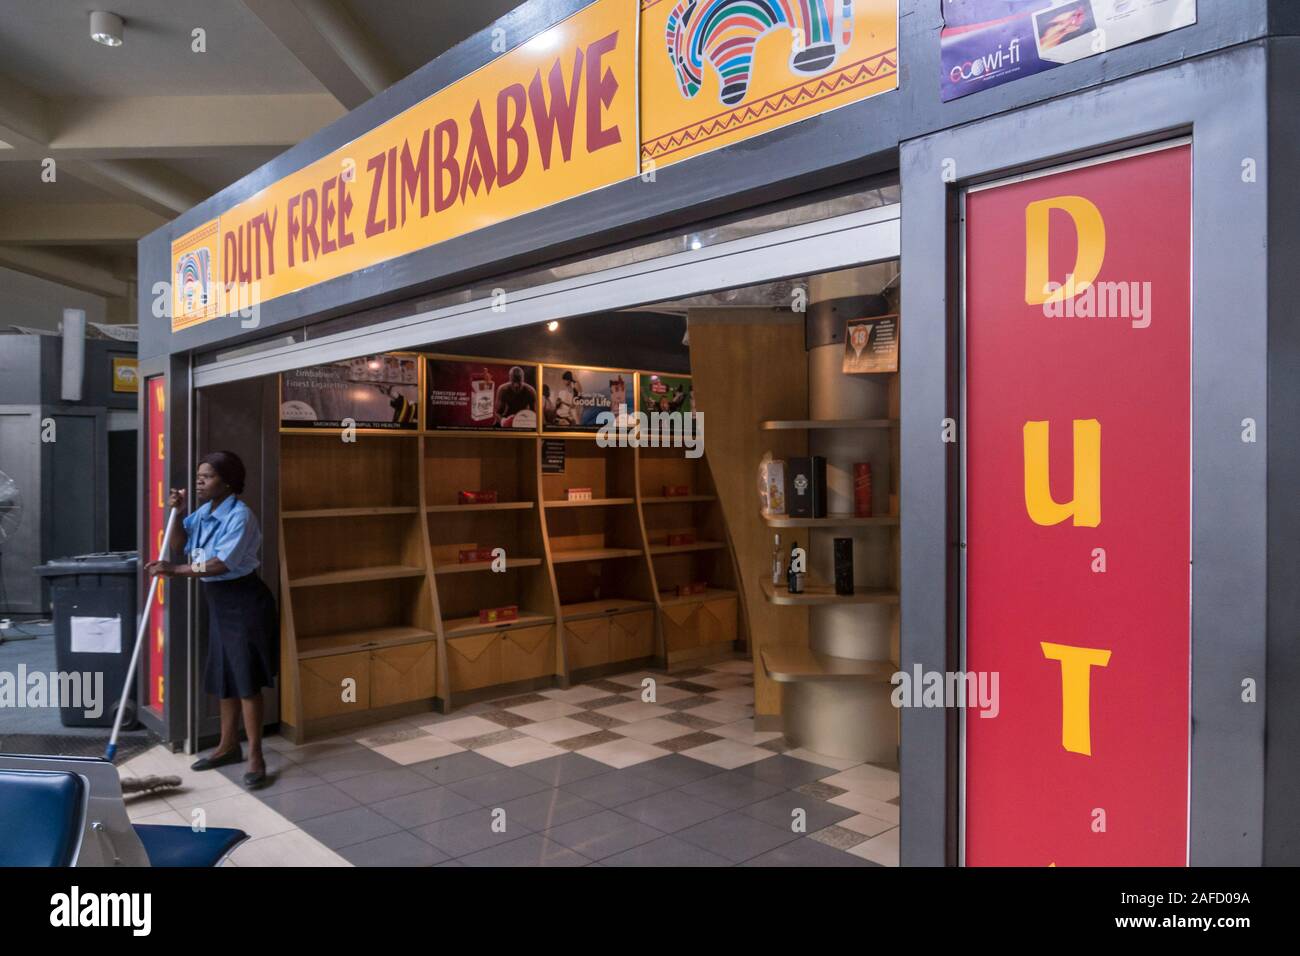 Aéroport international Robert Mugabe, Harare, Zimbabwe. Une boutique hors taxes presque vide pendant la crise économique de fin 2019. Banque D'Images